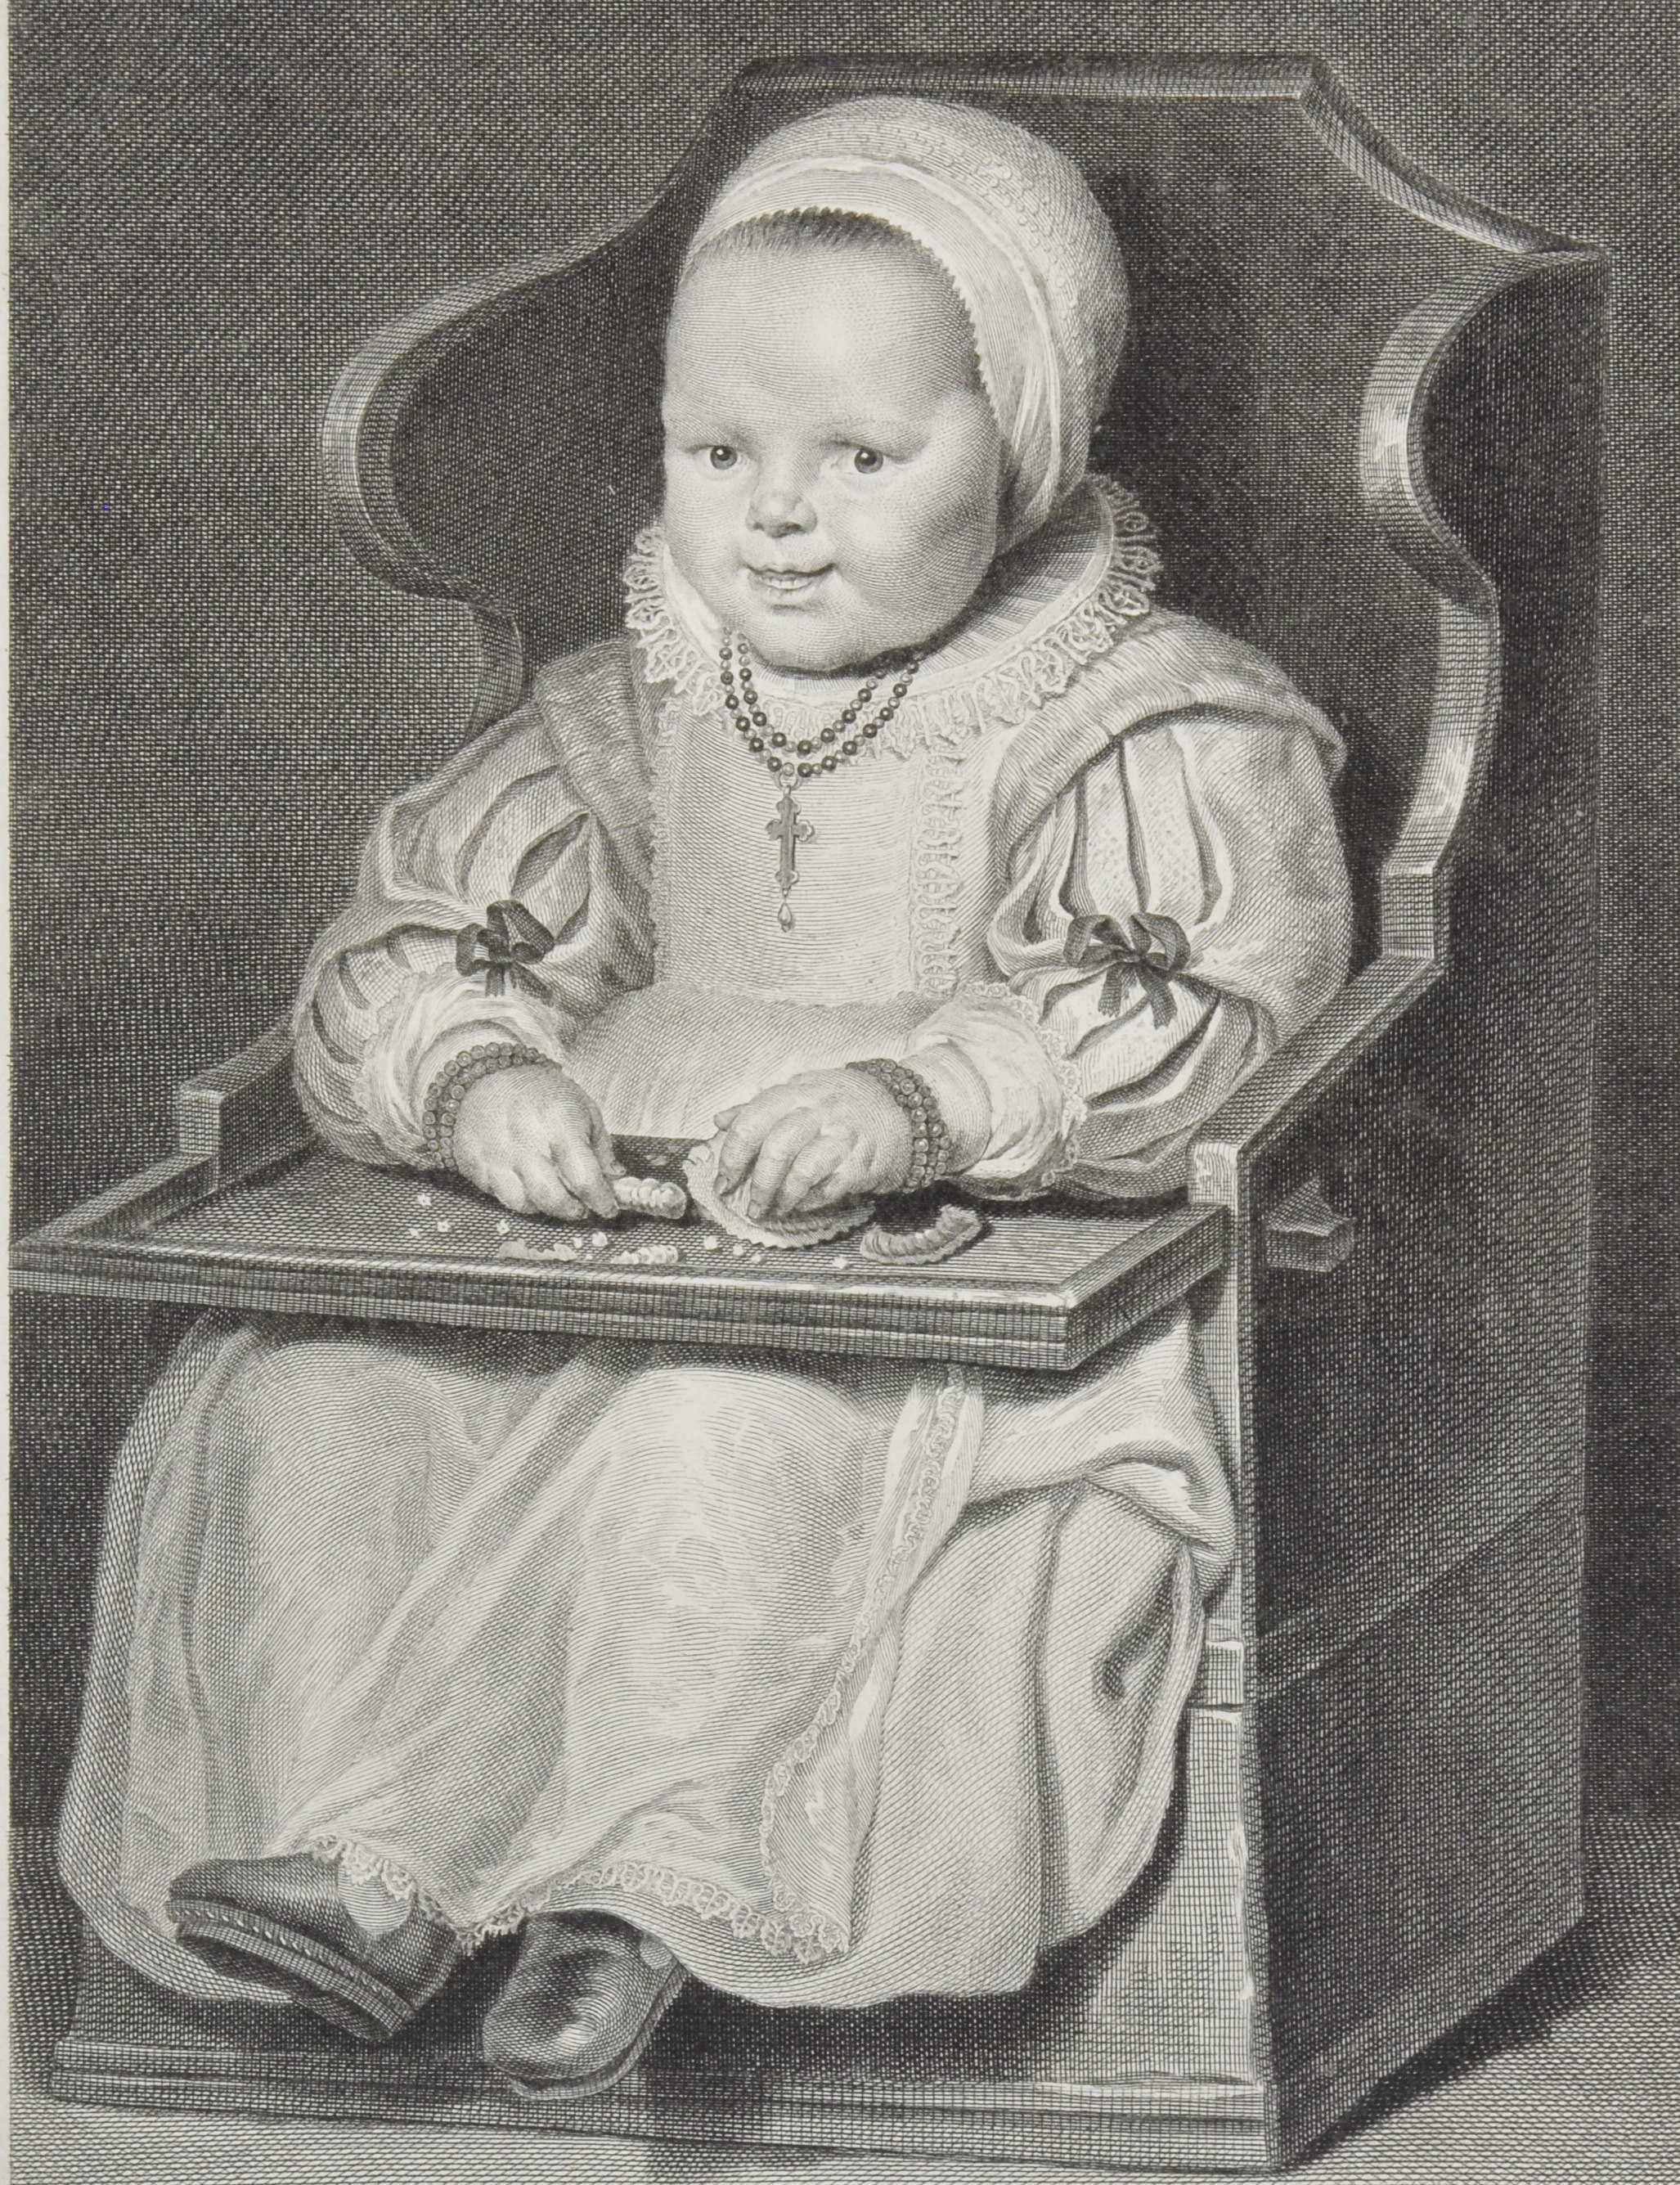 Гравюра, на якій дитина у стільці з високою спинкою. Дитина вдягнена у довгу сукню та головний убір